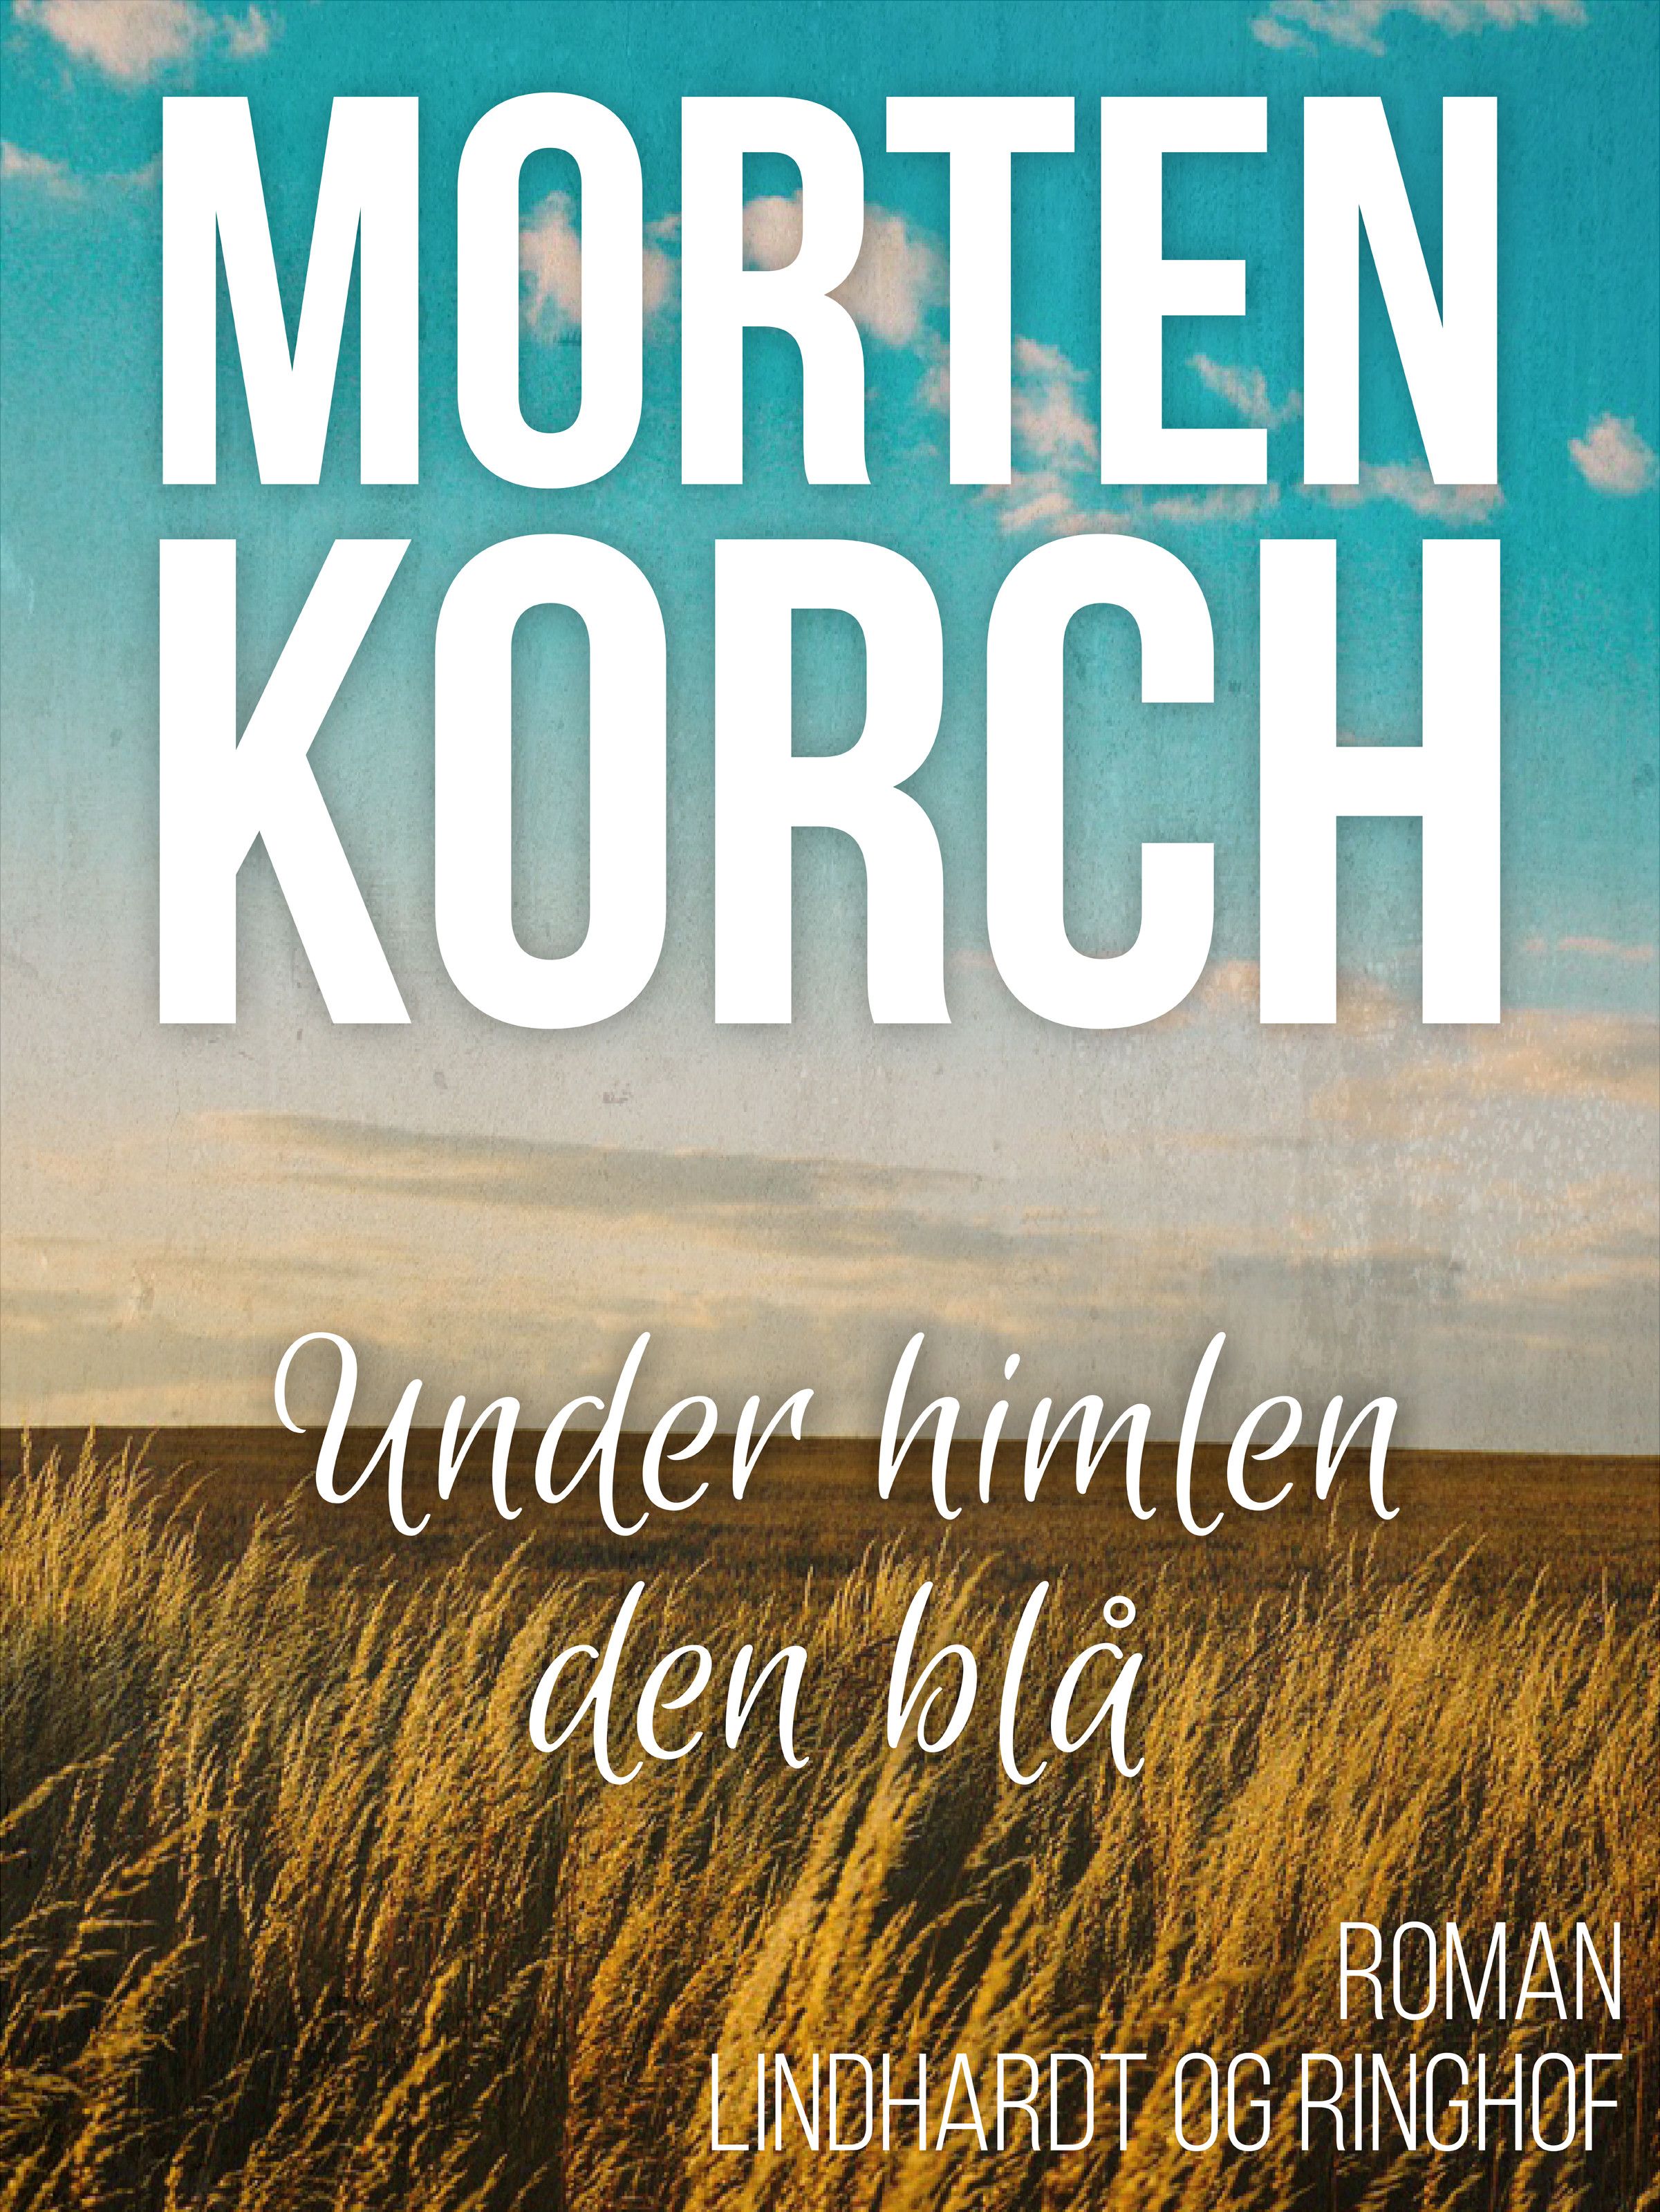 Under himlen den blå, ljudbok av Morten Korch